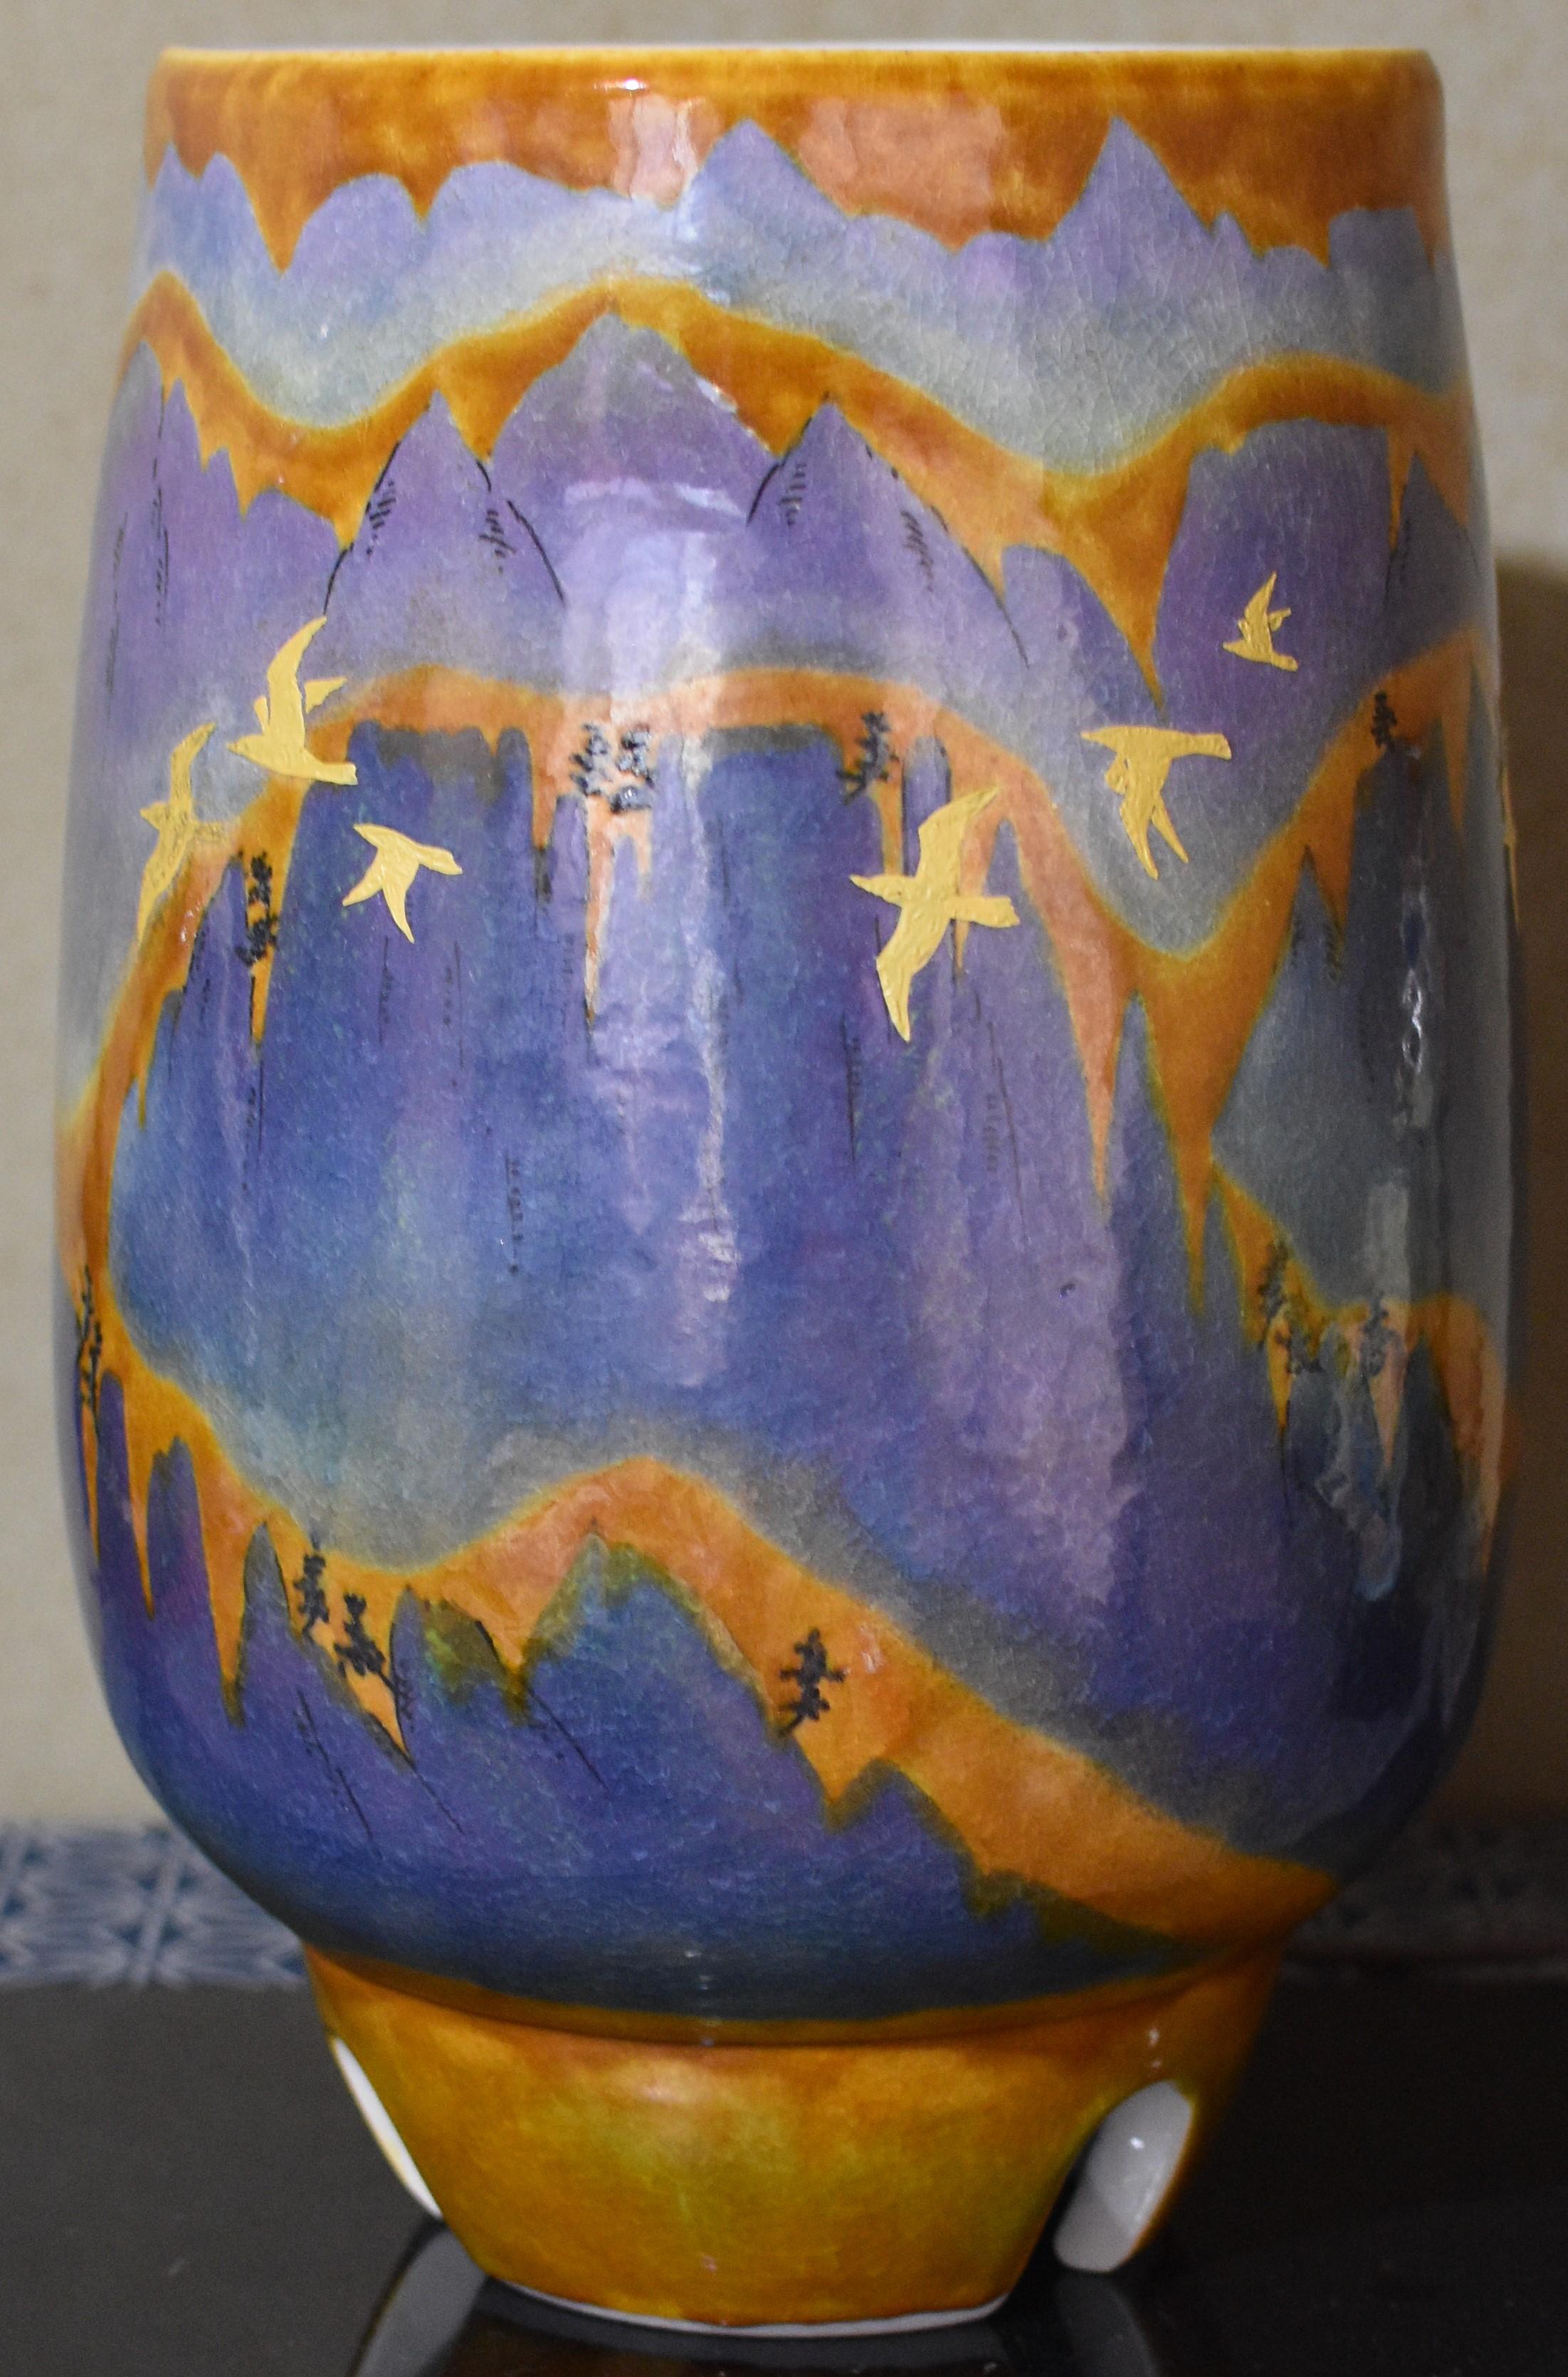 Grand vase contemporain époustouflant en porcelaine décorative japonaise sur pied, peint à la main de manière complexe en orange vif, jaune et nuances étonnantes de la signature de l'artiste, le violet, sur un corps cylindrique de forme étonnante.